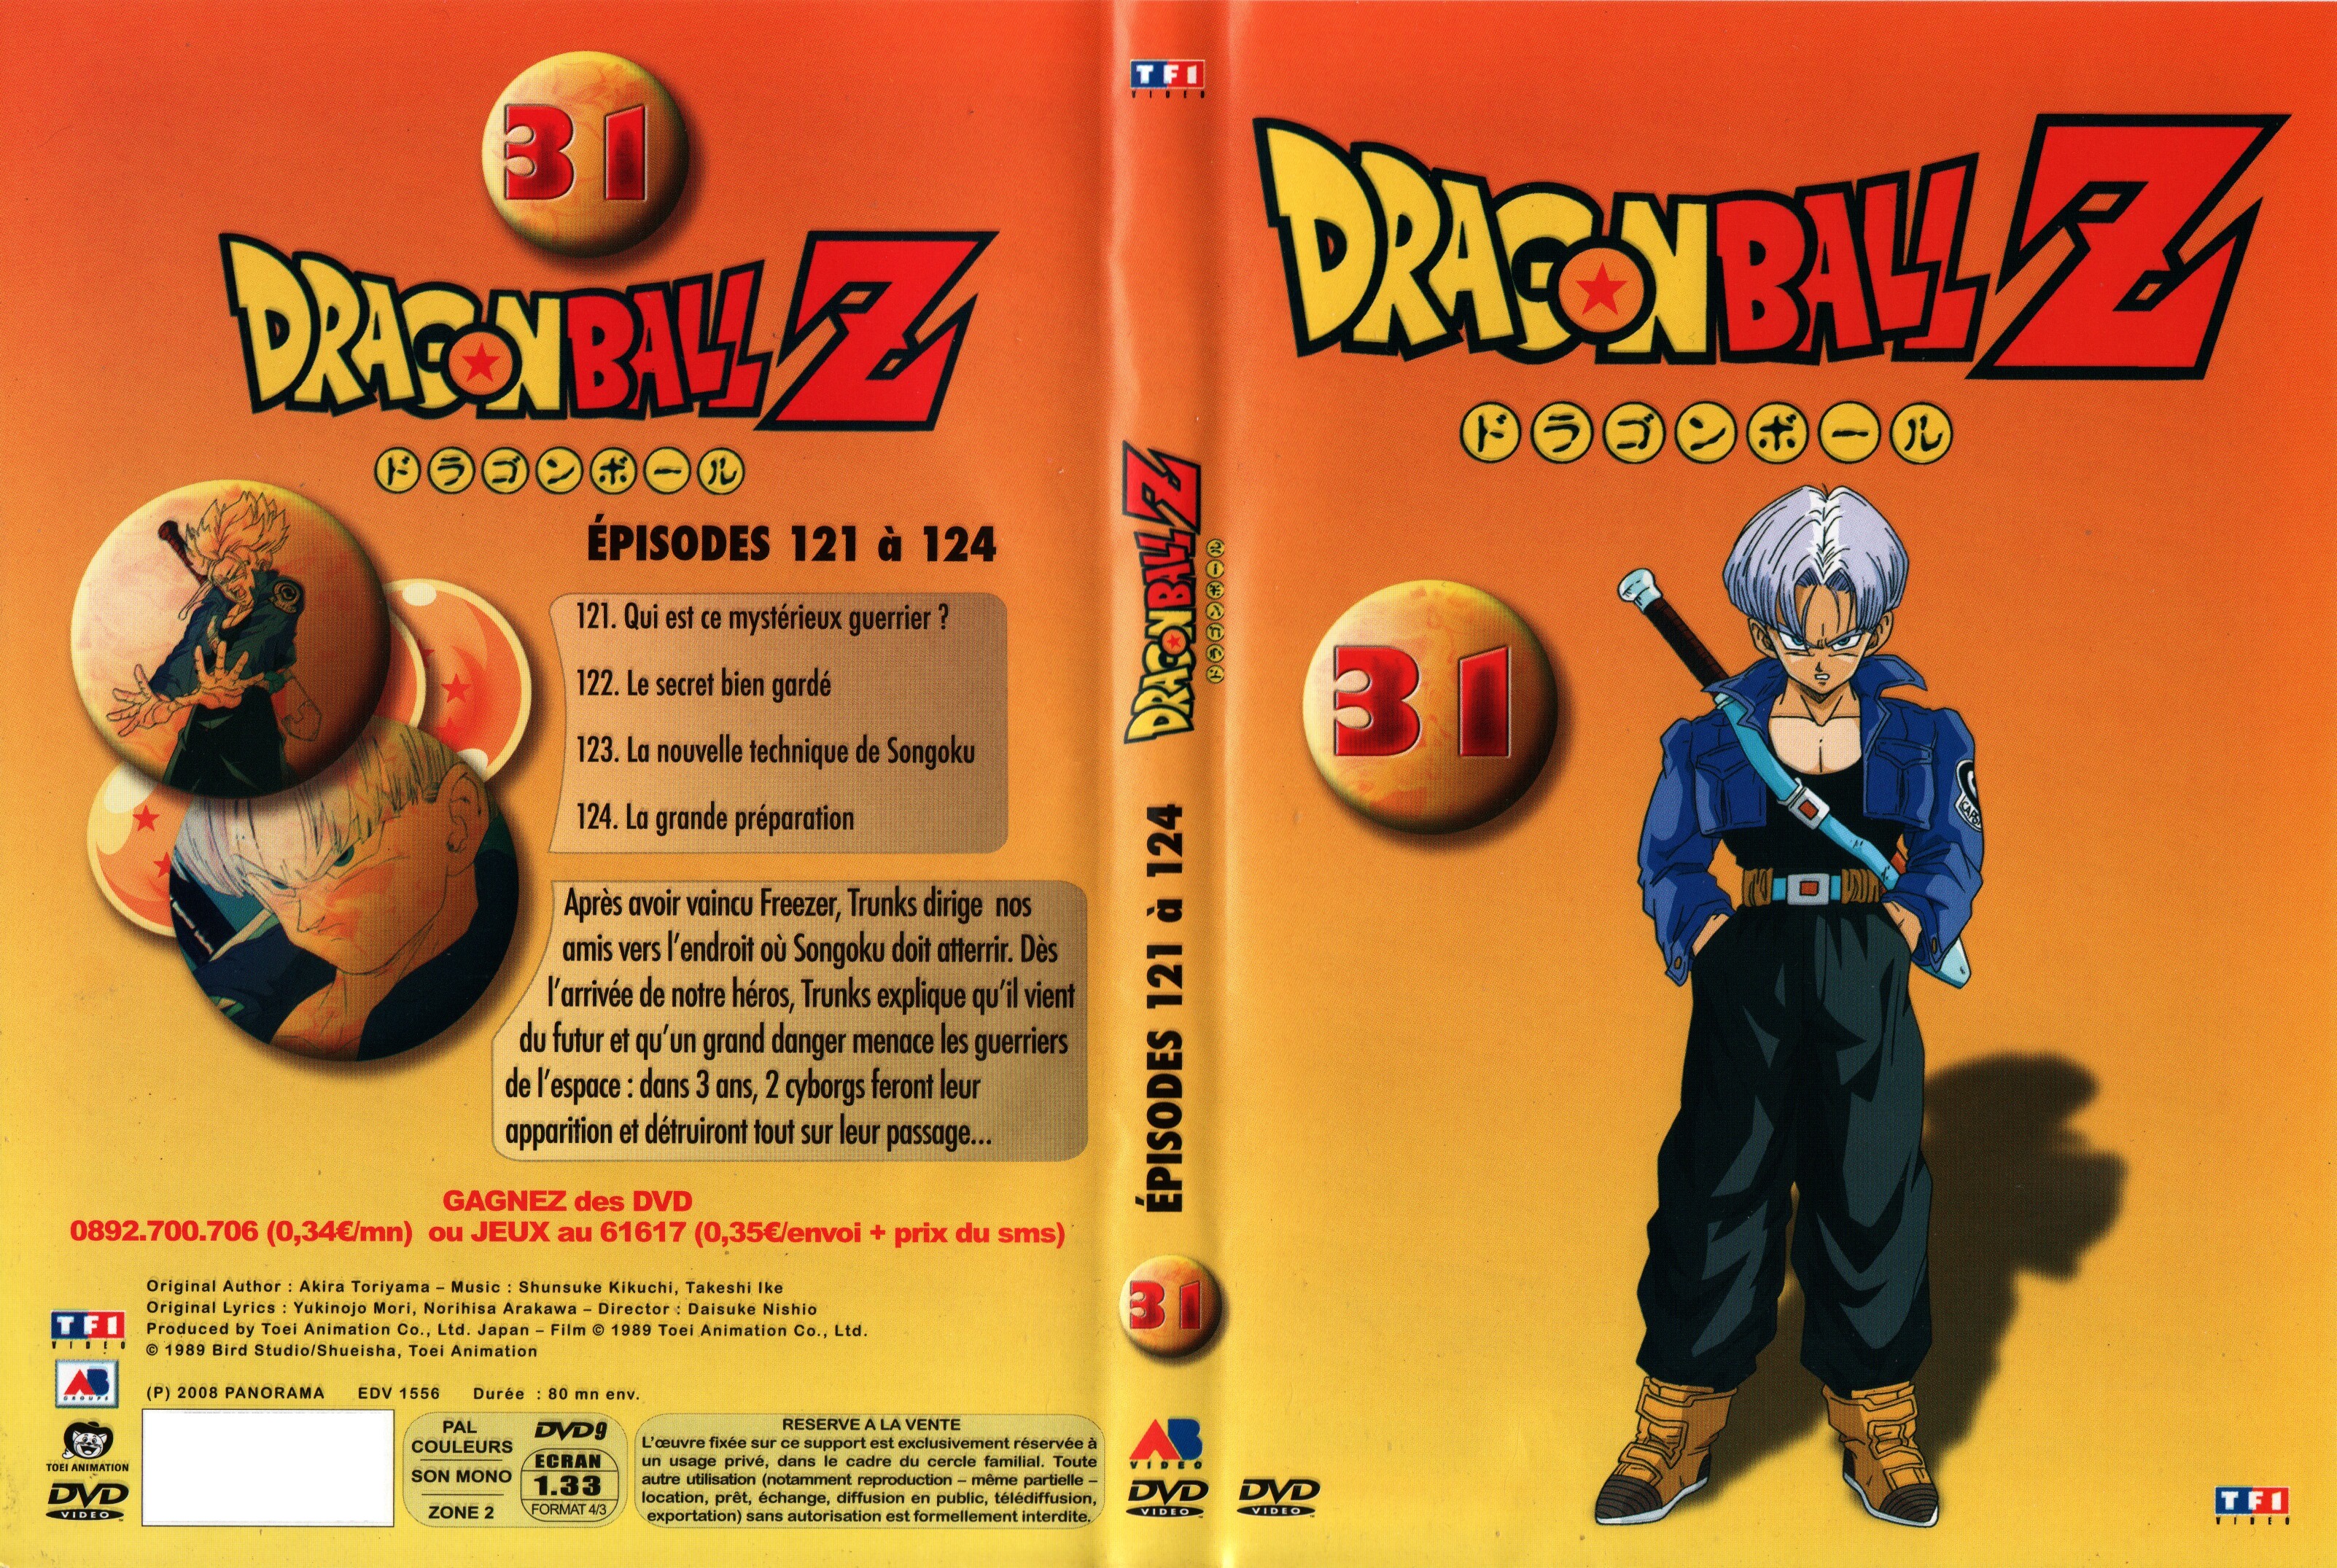 Jaquette DVD Dragon Ball Z vol 31 v2